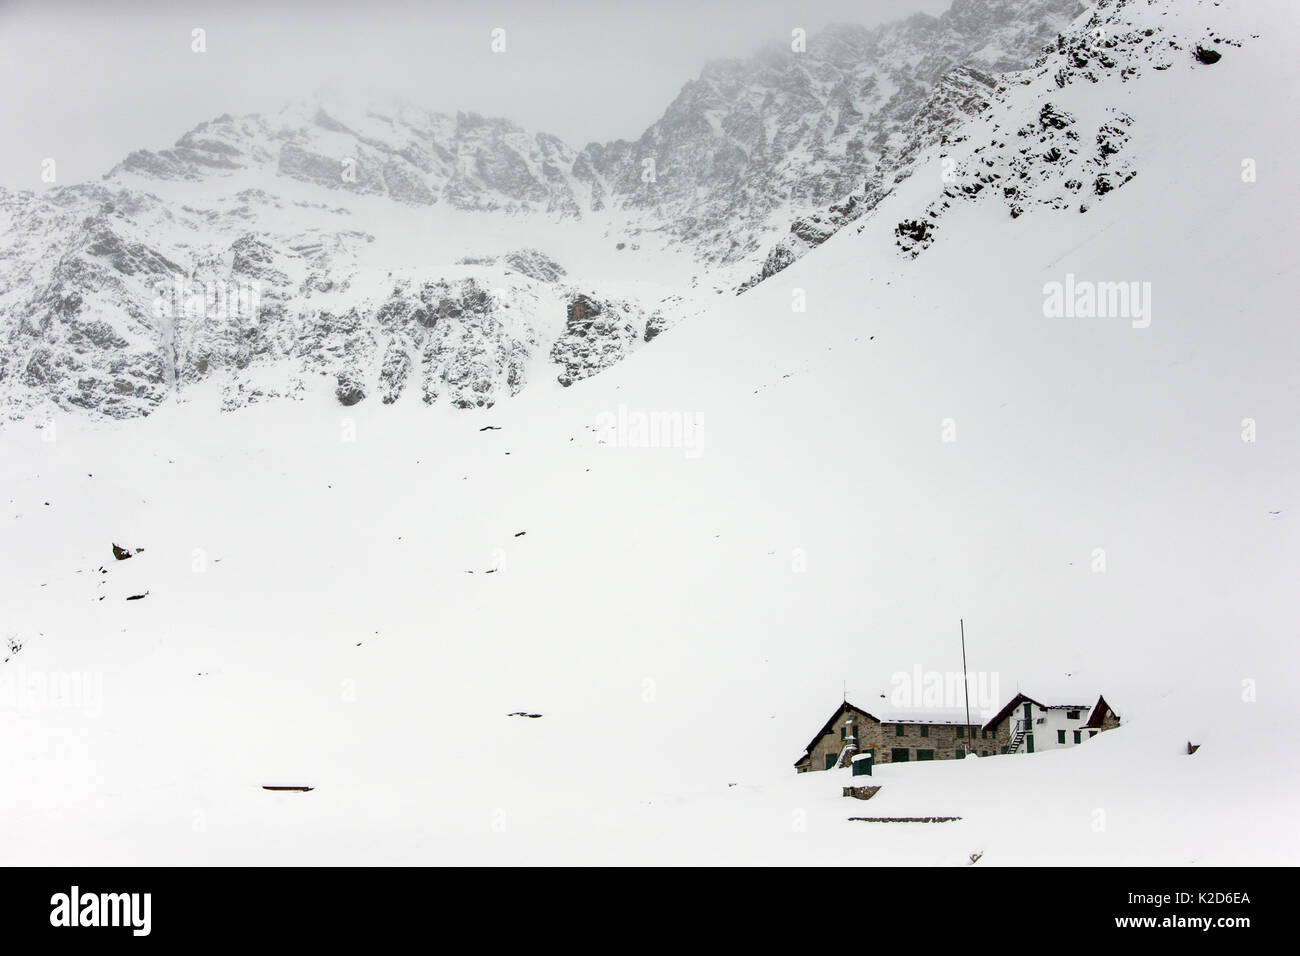 Vittorio Sella rifugio di montagna in inverno nevoso condizioni, il Parco Nazionale del Gran Paradiso, l'Italia, Novembre. Foto Stock